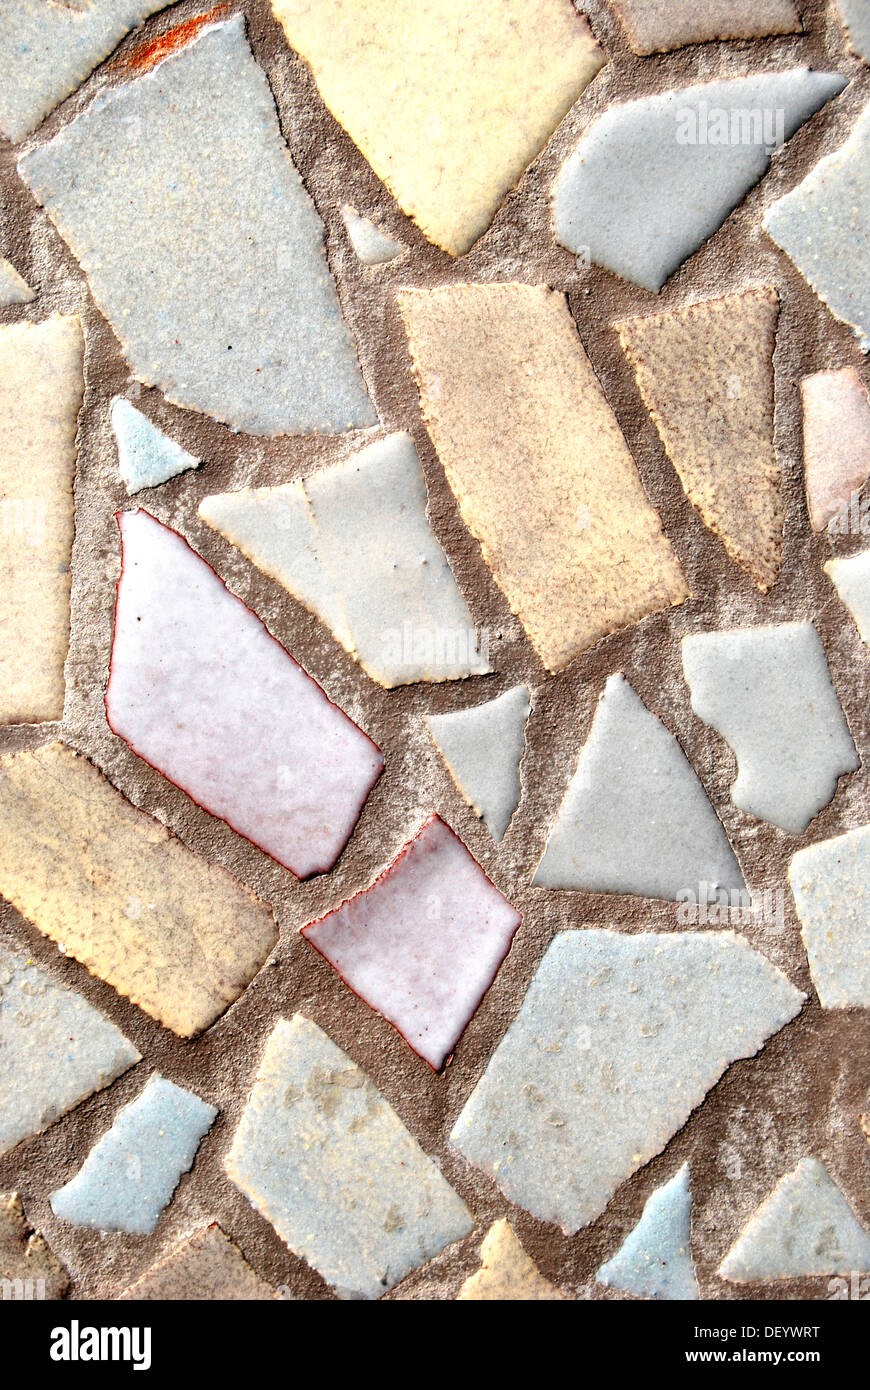 Mosaik aus gebrochenen Fliesen in Pastellfarben Stockfoto